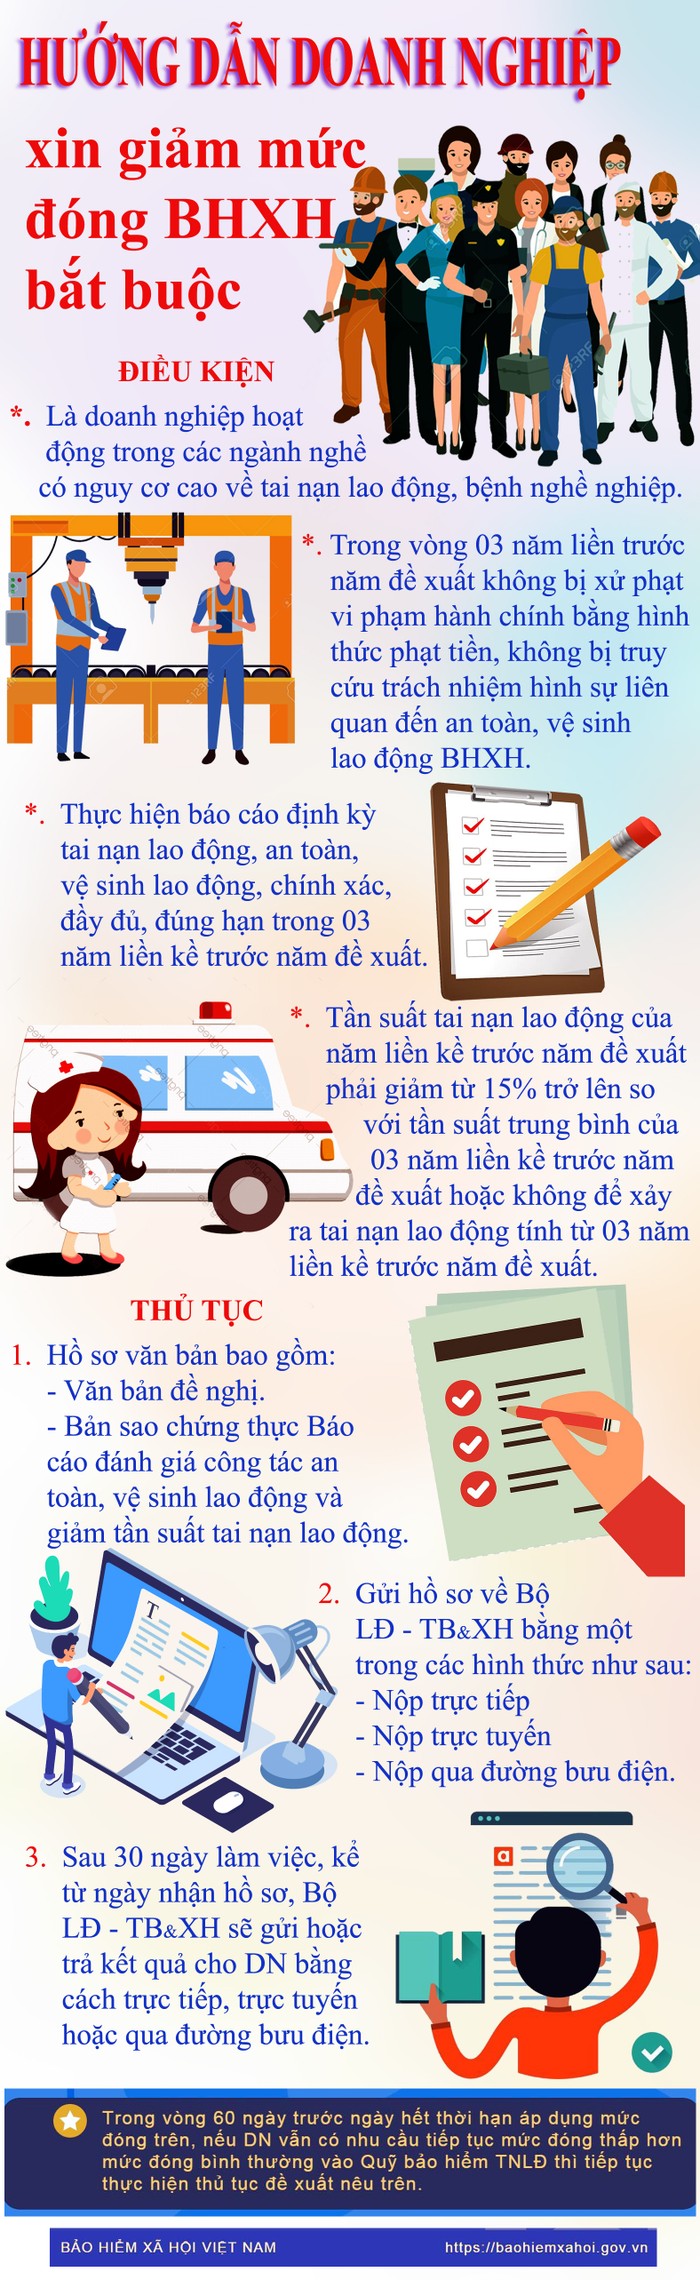 Hướng dẫn doanh nghiệp xin giảm mức đóng BHXH bắt buộc. Infographic: Tùng Dương.